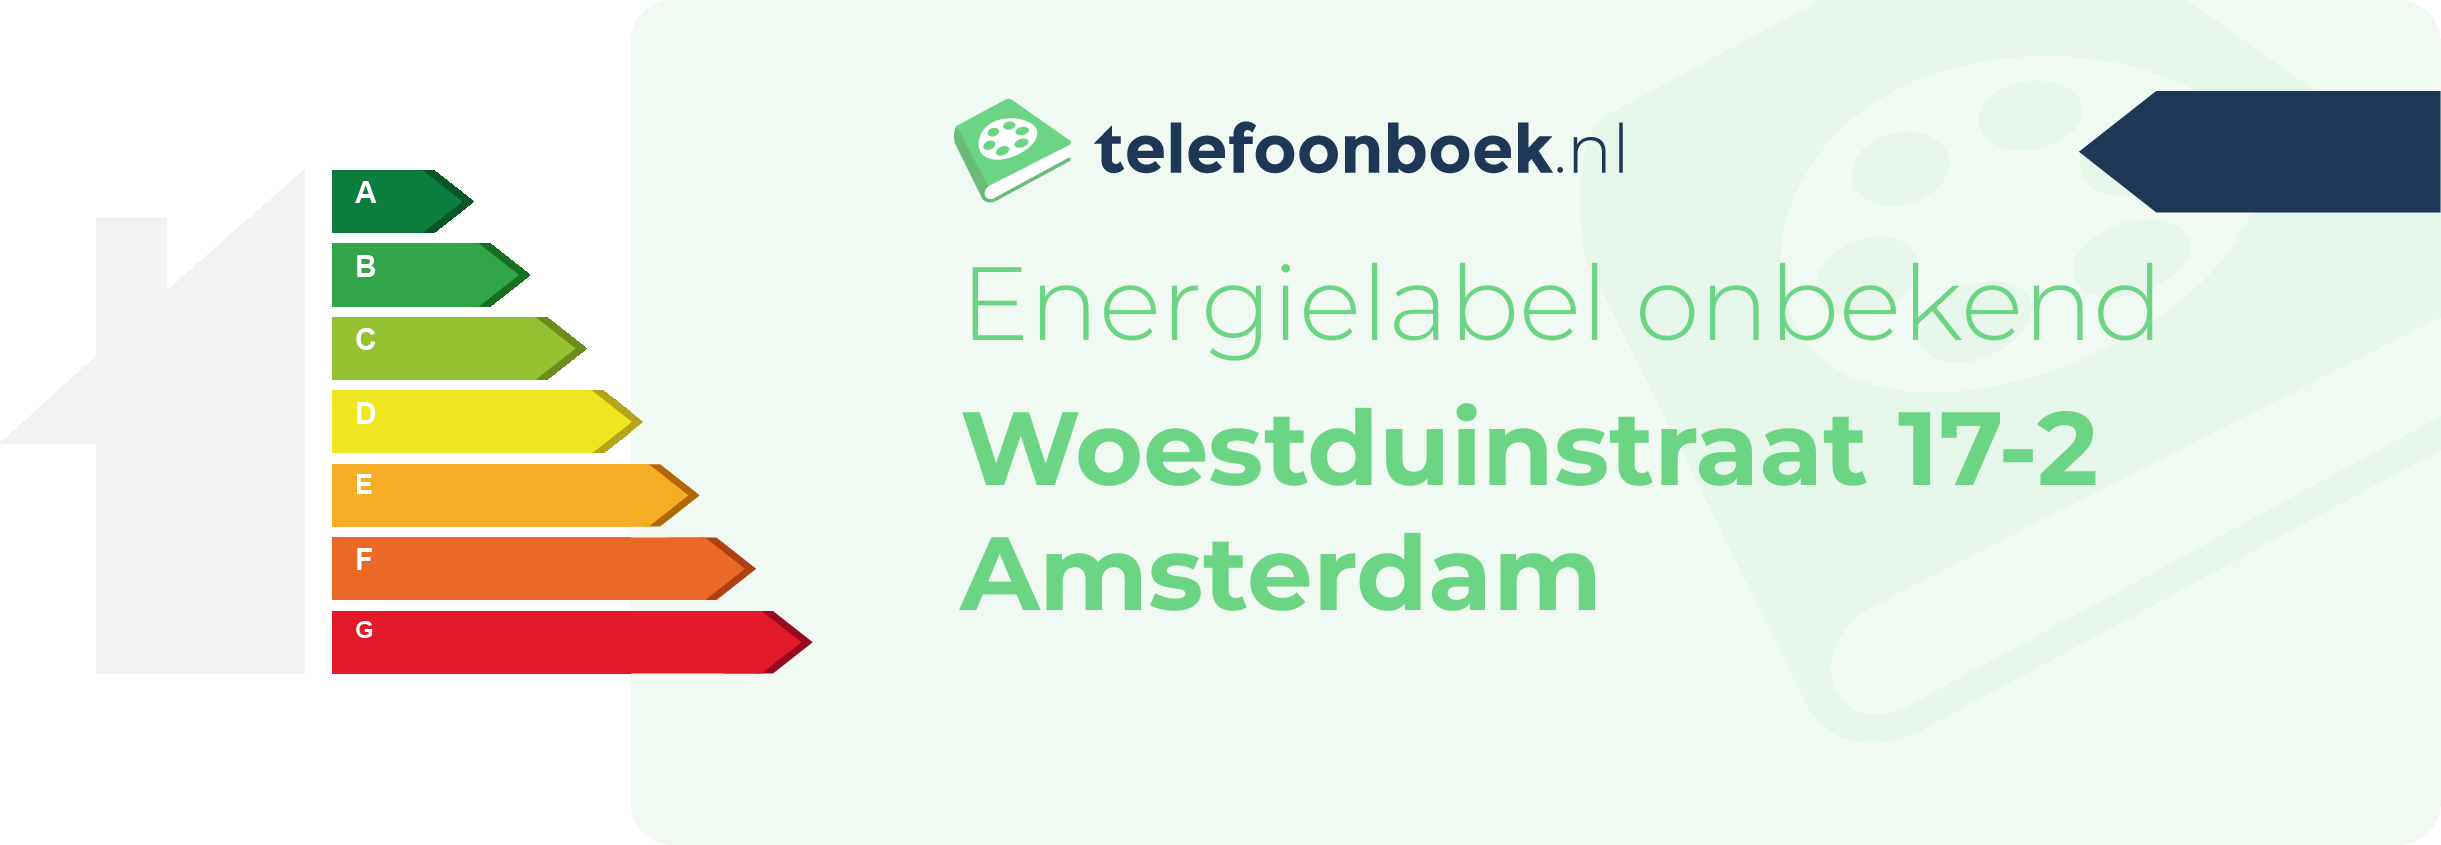 Energielabel Woestduinstraat 17-2 Amsterdam